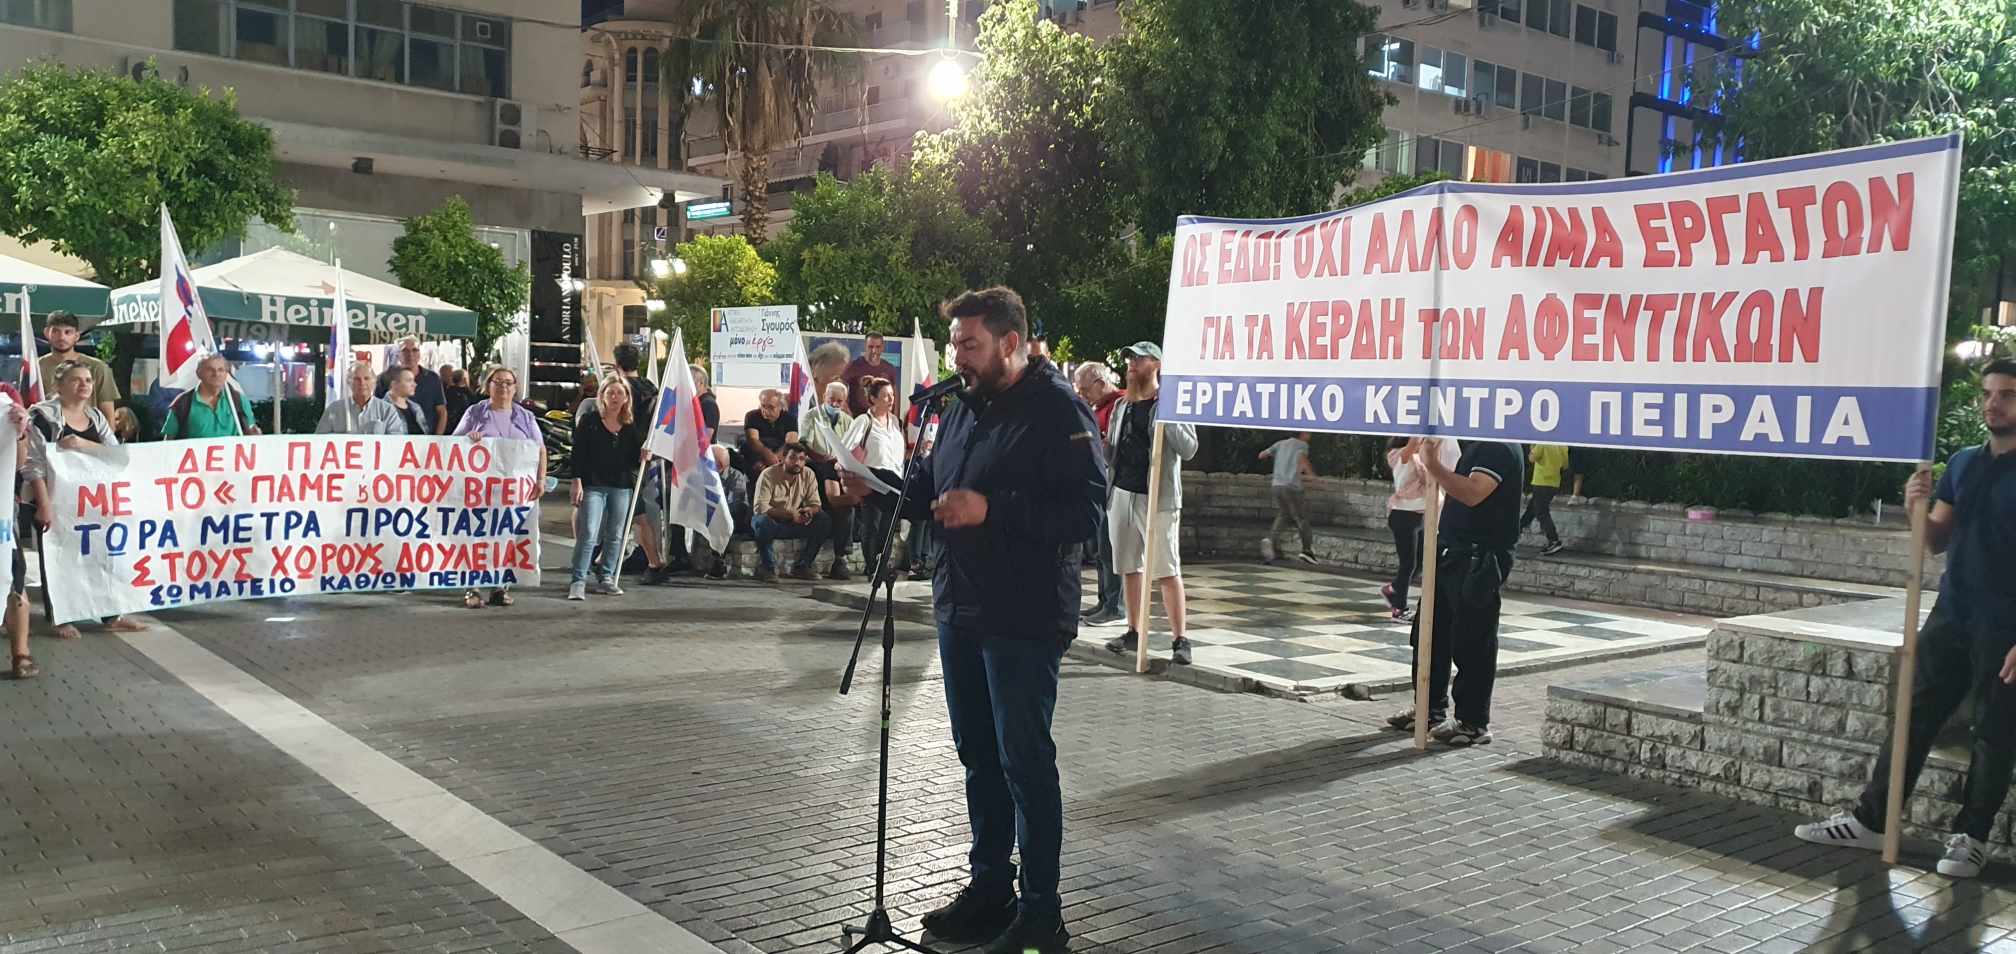 Συγκέντρωση διαμαρτυρίας για τον τραγικό θάνατο εργάτη σε φρεάτιο στον Πειραιά